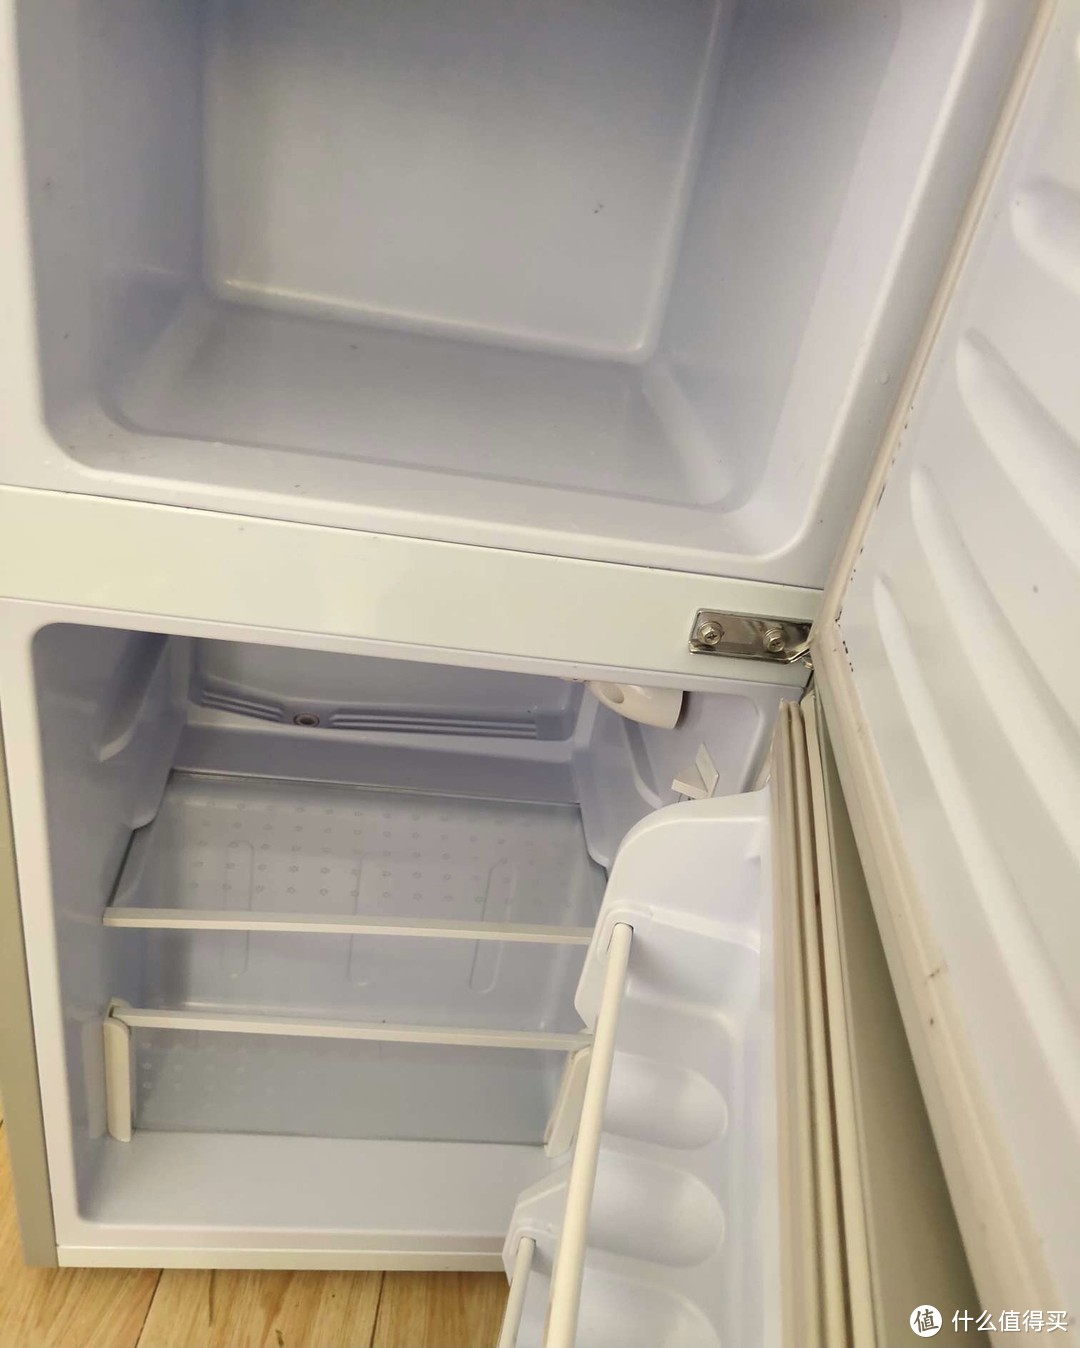 自己一个人生活的小型冰箱